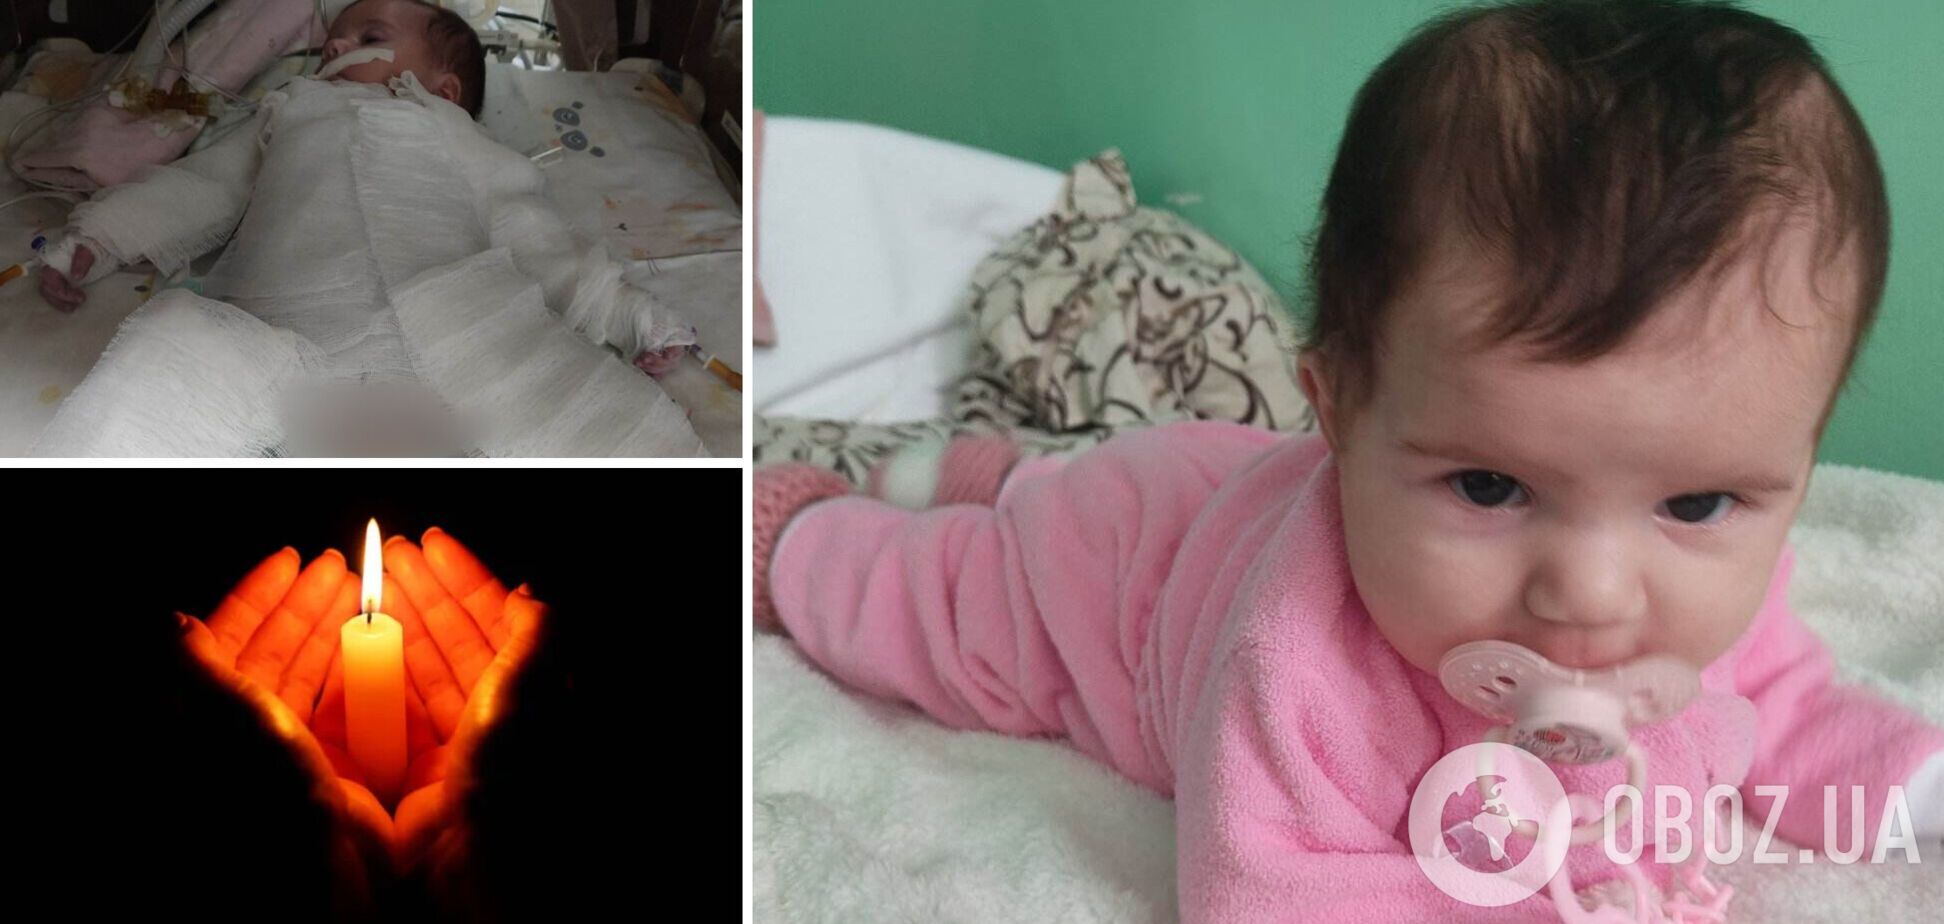 Маленька дівчинка буквально згоріла на операції: подробиці трагедії в Рівному